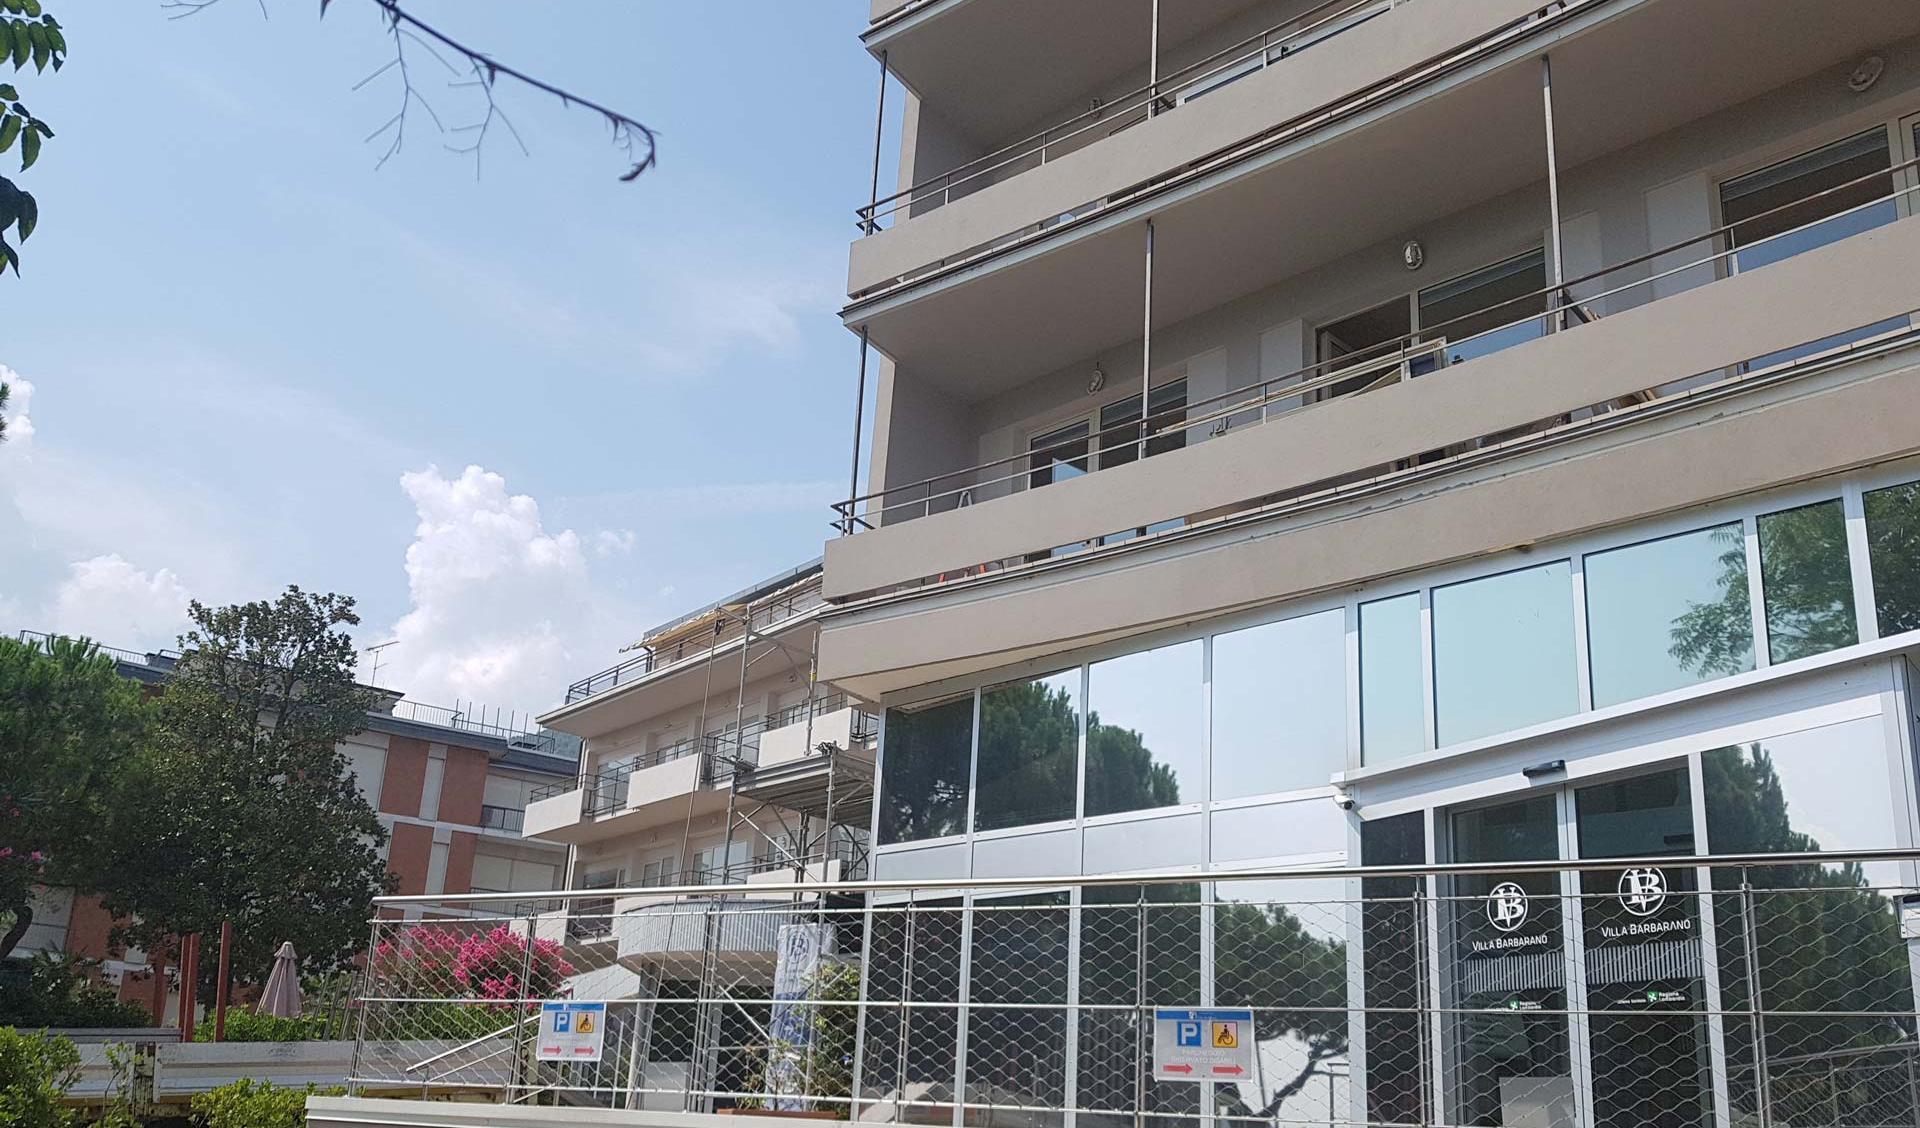 Expansion of the Private Clinic Villa Barbarano